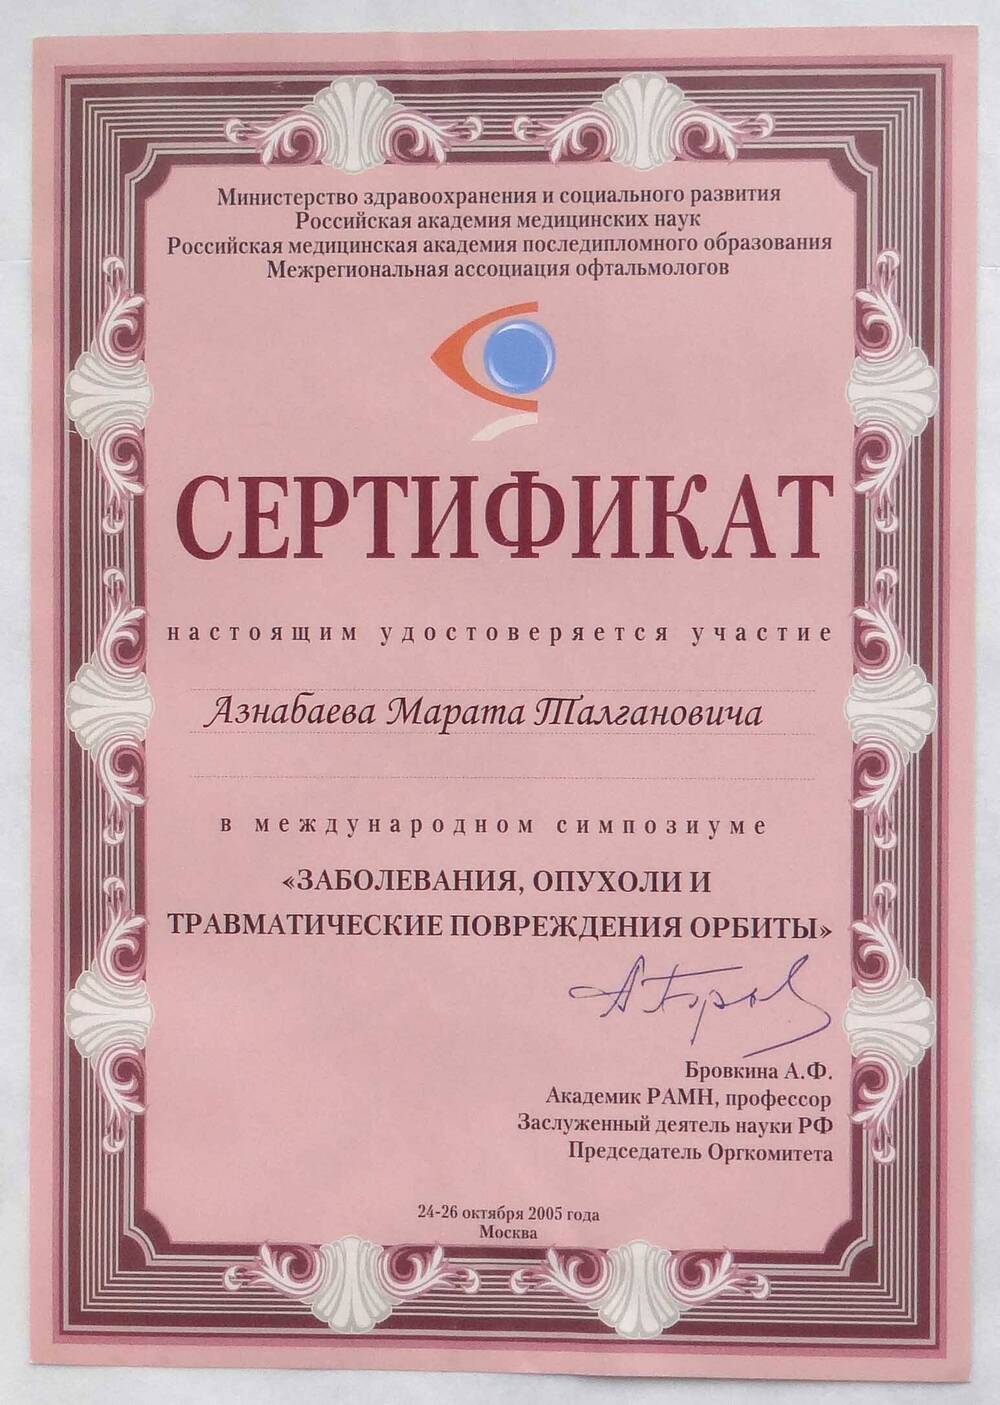 Сертификат, удостоверяющий участие Азнабаева М.Т. в международном симпозиуме Заболевания, опухоли и травматические повреждения орбиты.